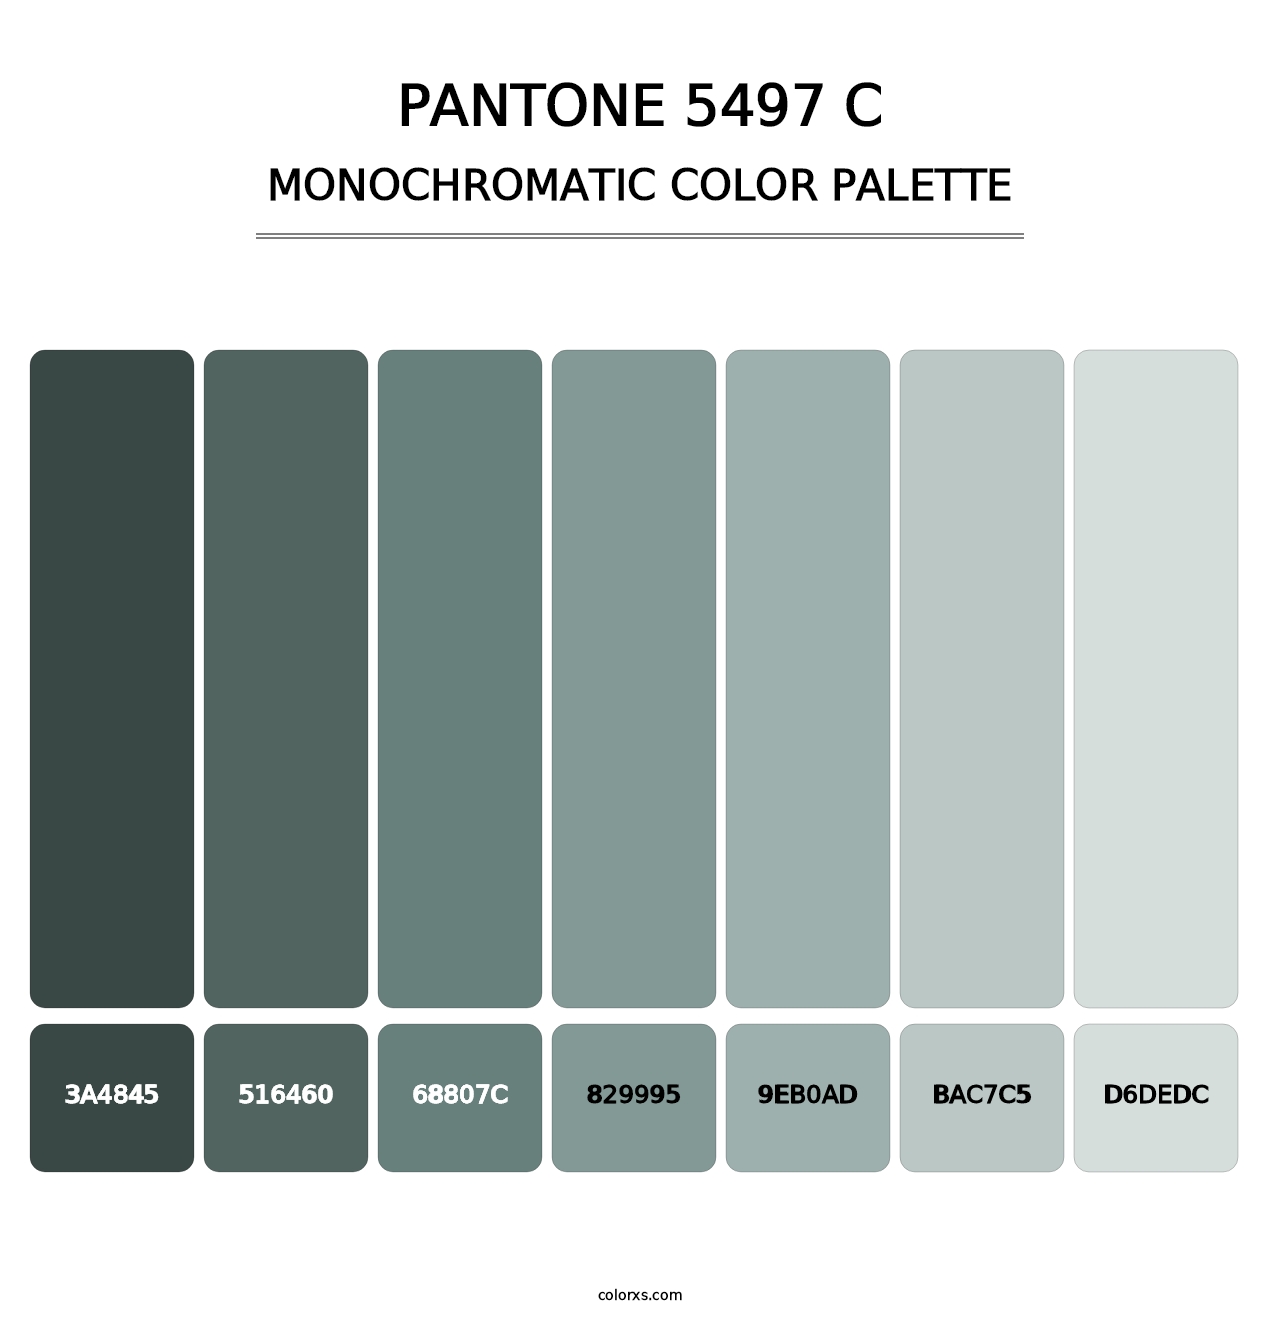 PANTONE 5497 C - Monochromatic Color Palette